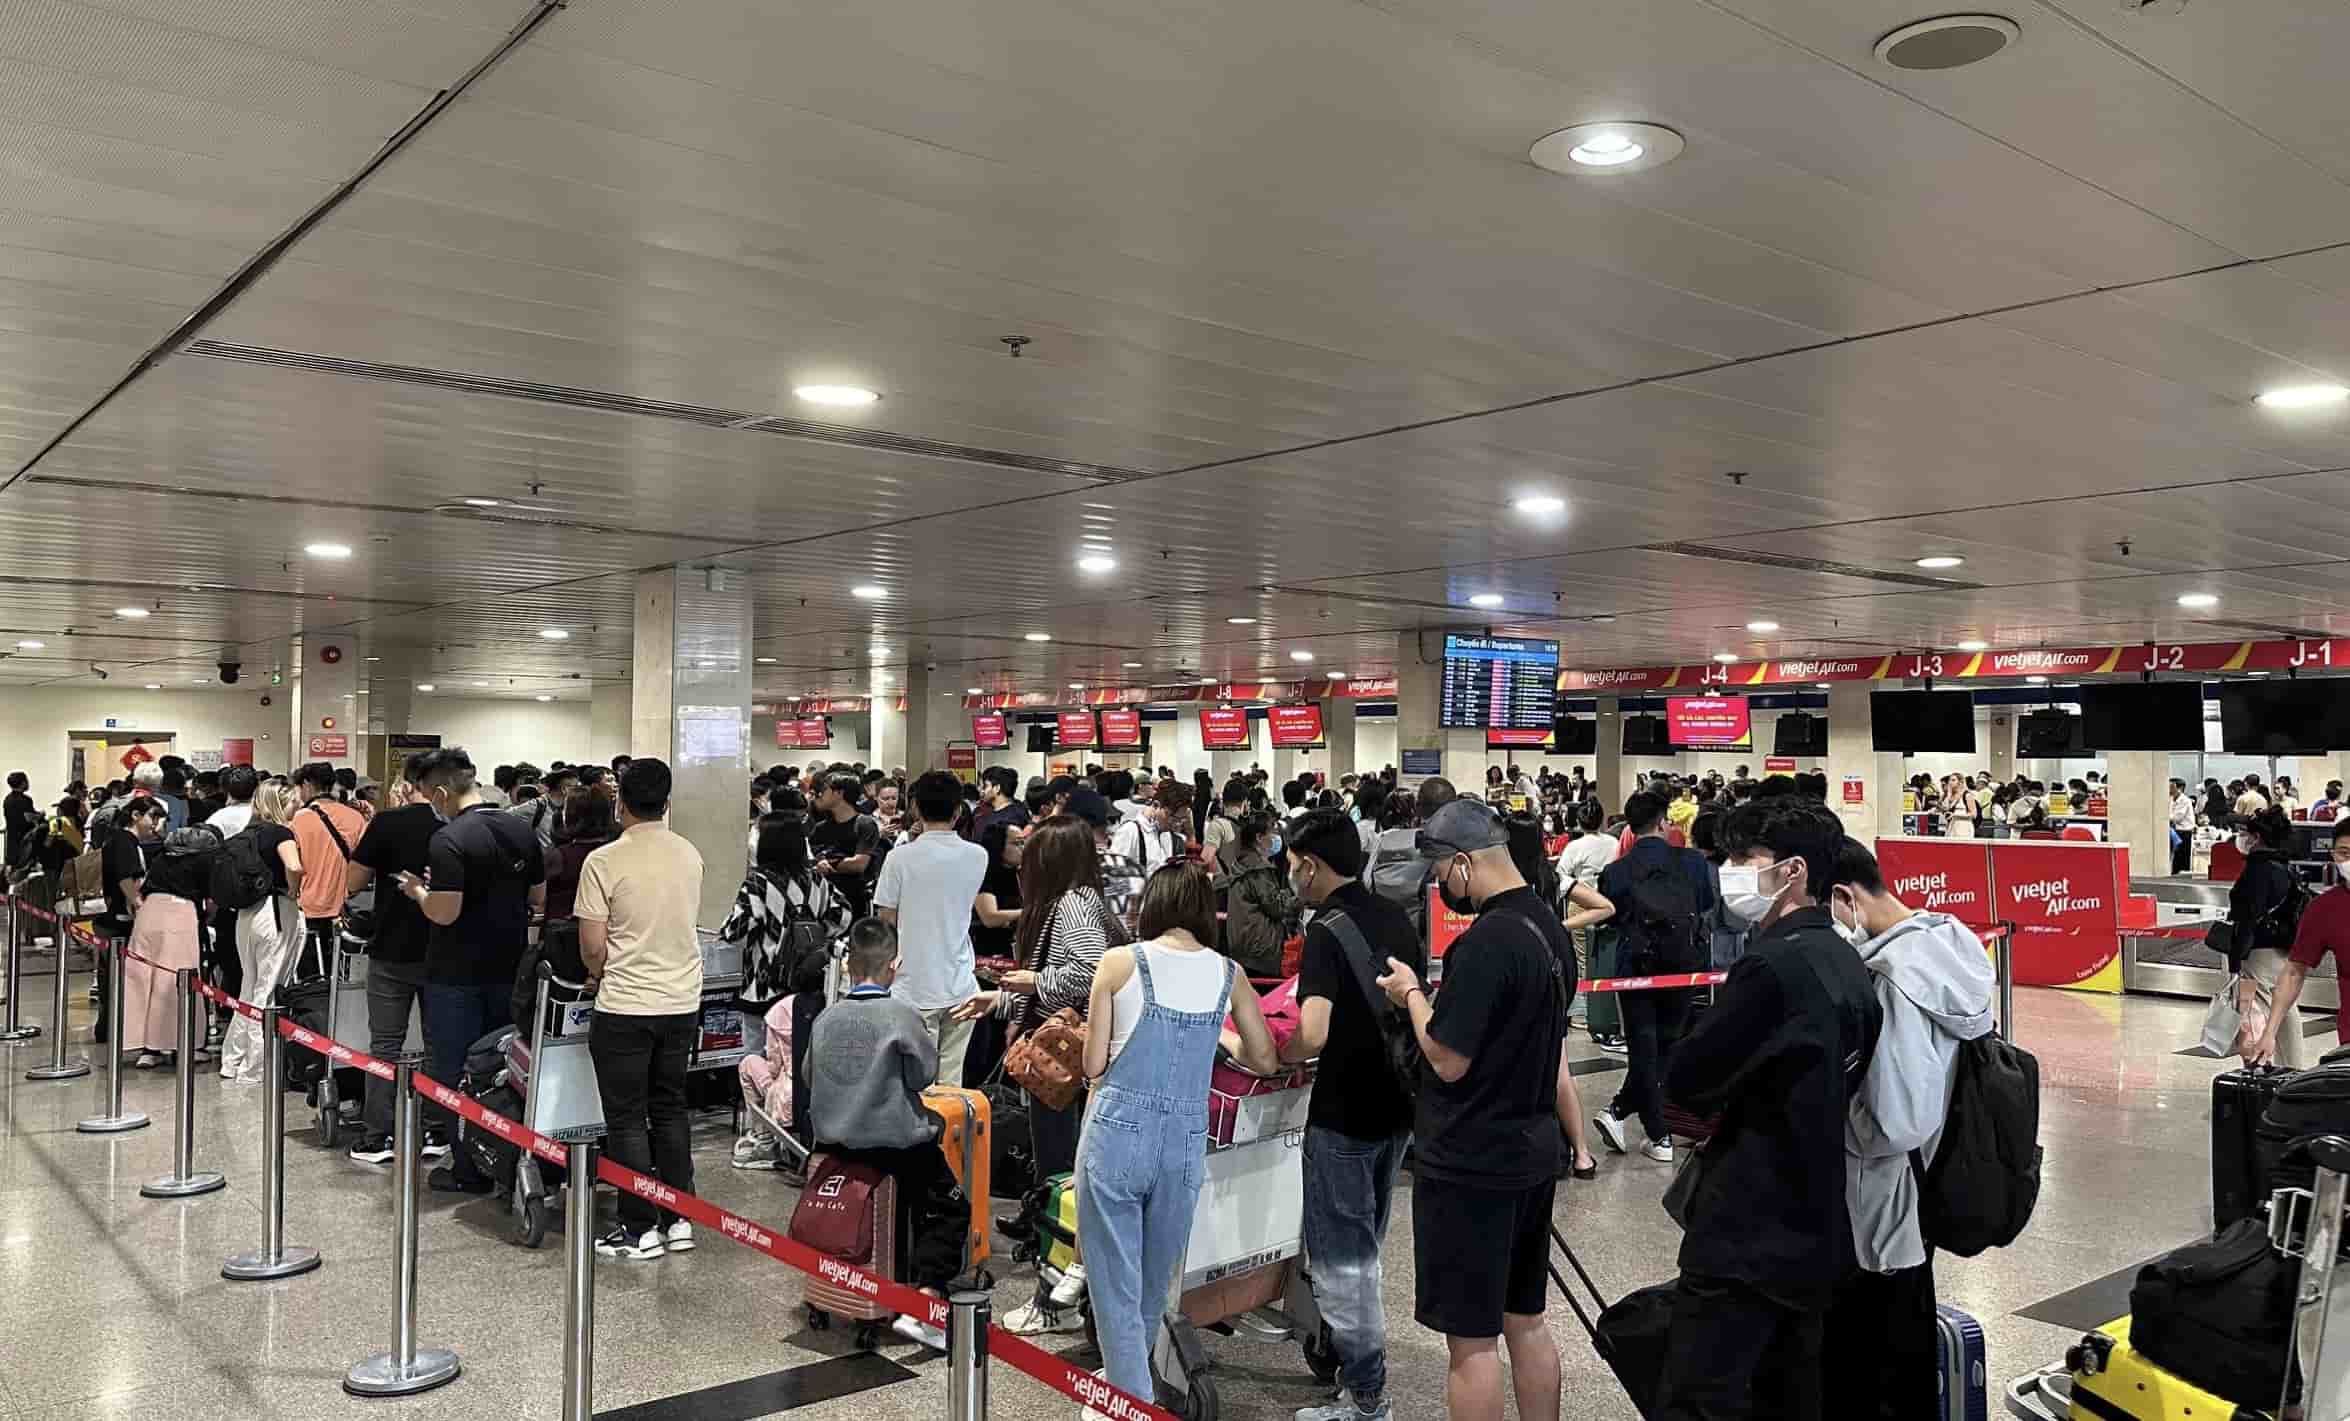 Theo ghi nhận của Lao Động, vào chủ nhật cuối cùng của năm ngày 4.2, ga quốc nội sân bay Tân Sơn Nhất (TPHCM) đông nghẹt người từ khu vực làm thủ tục. Hàng nghìn người lỉnh kỉnh hành lý, đứng, ngồi kín nhiều khu vực ở ga quốc nội để về quê ăn Tết.